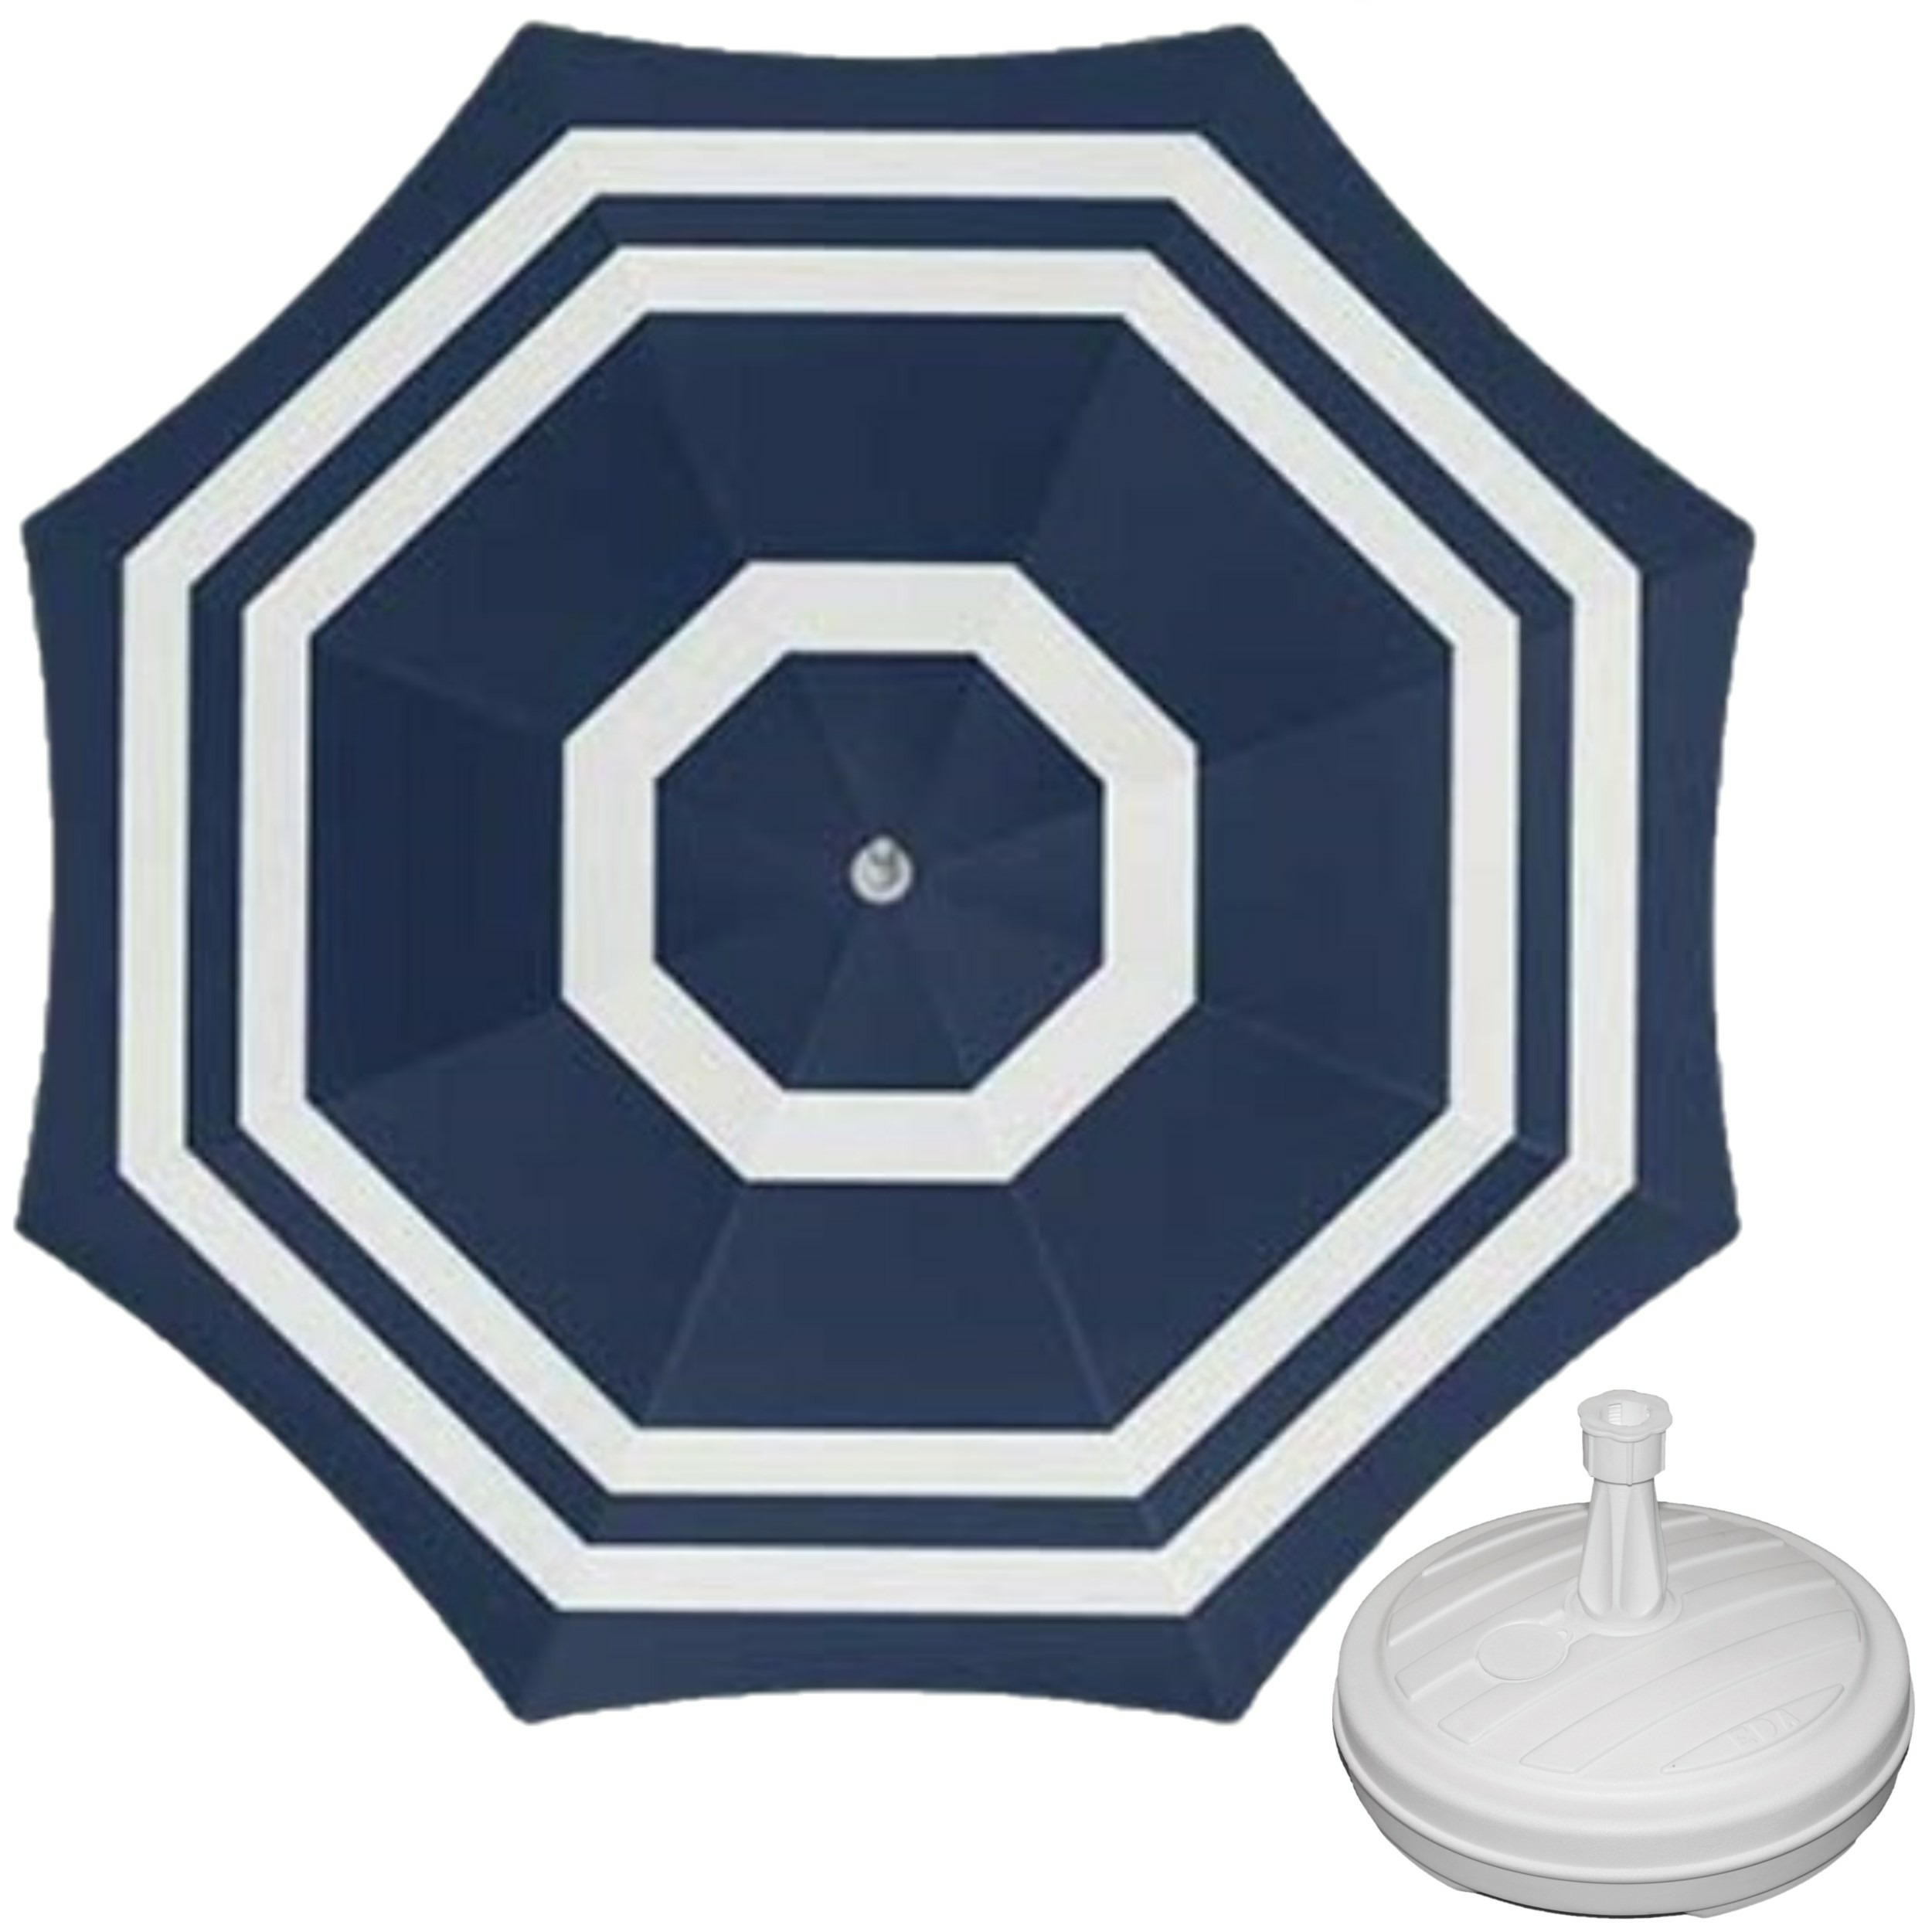 Parasol blauw-wit D180 cm incl. draagtas parasolvoet 42 cm